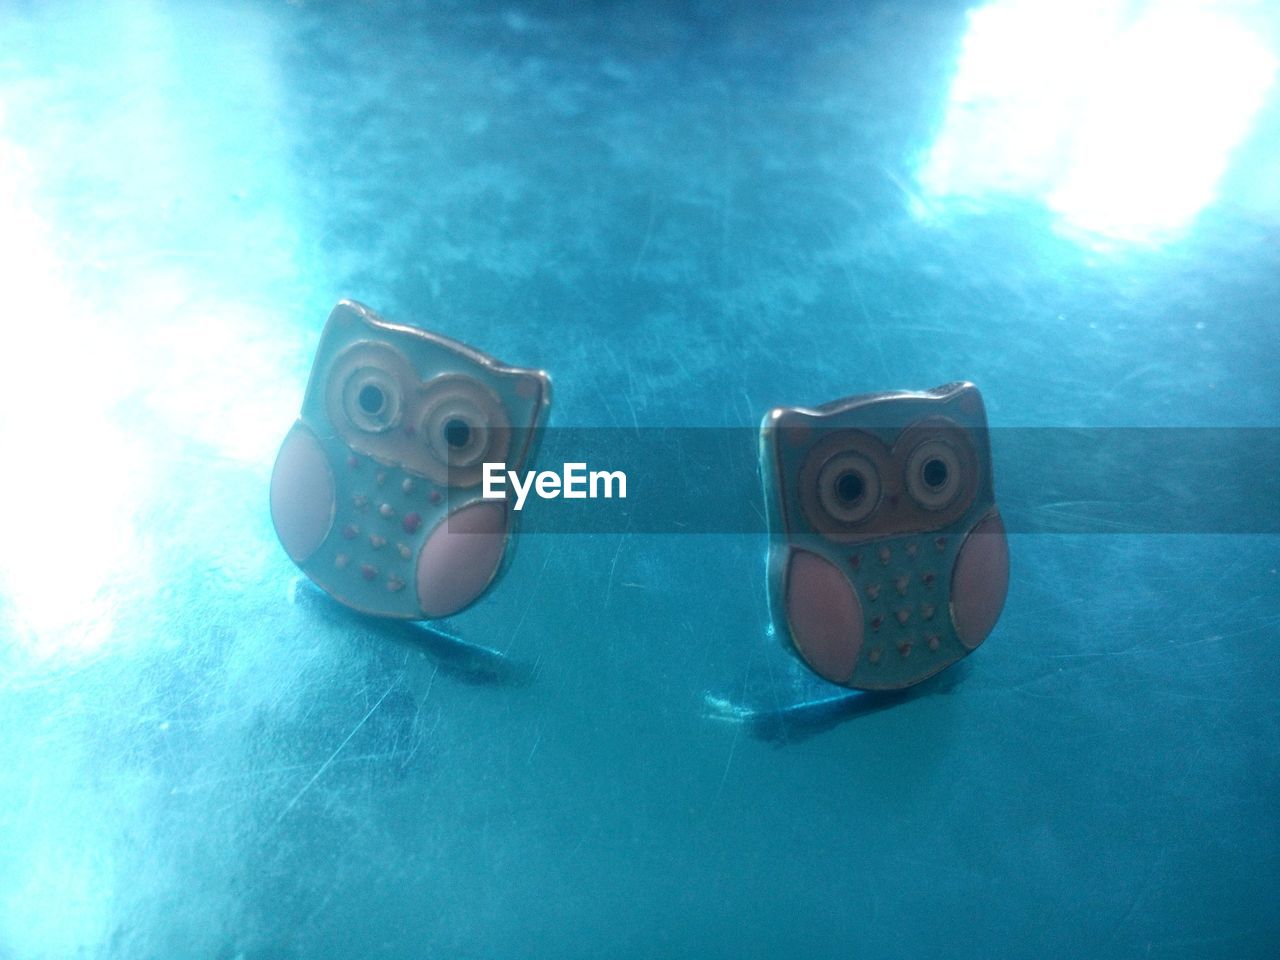 Two owl shape objects in detail